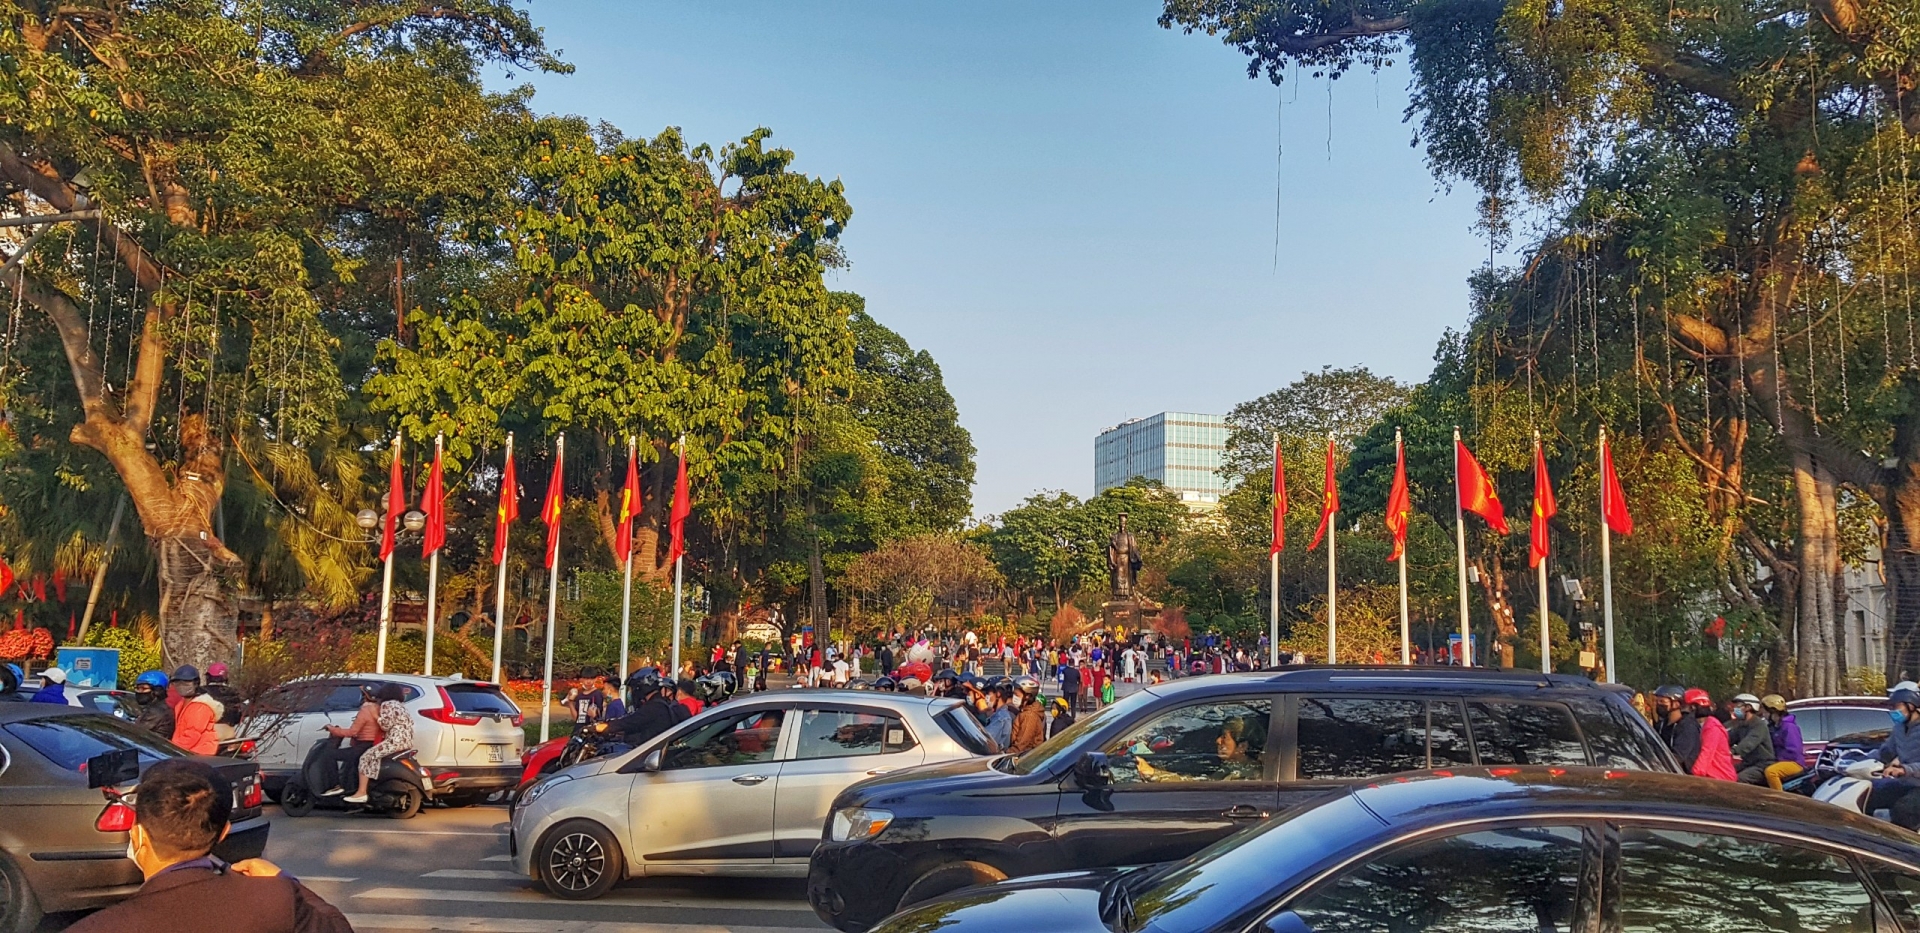 Quảng trường Lý Thái Tổ đông kín người dân đến vui chơi.